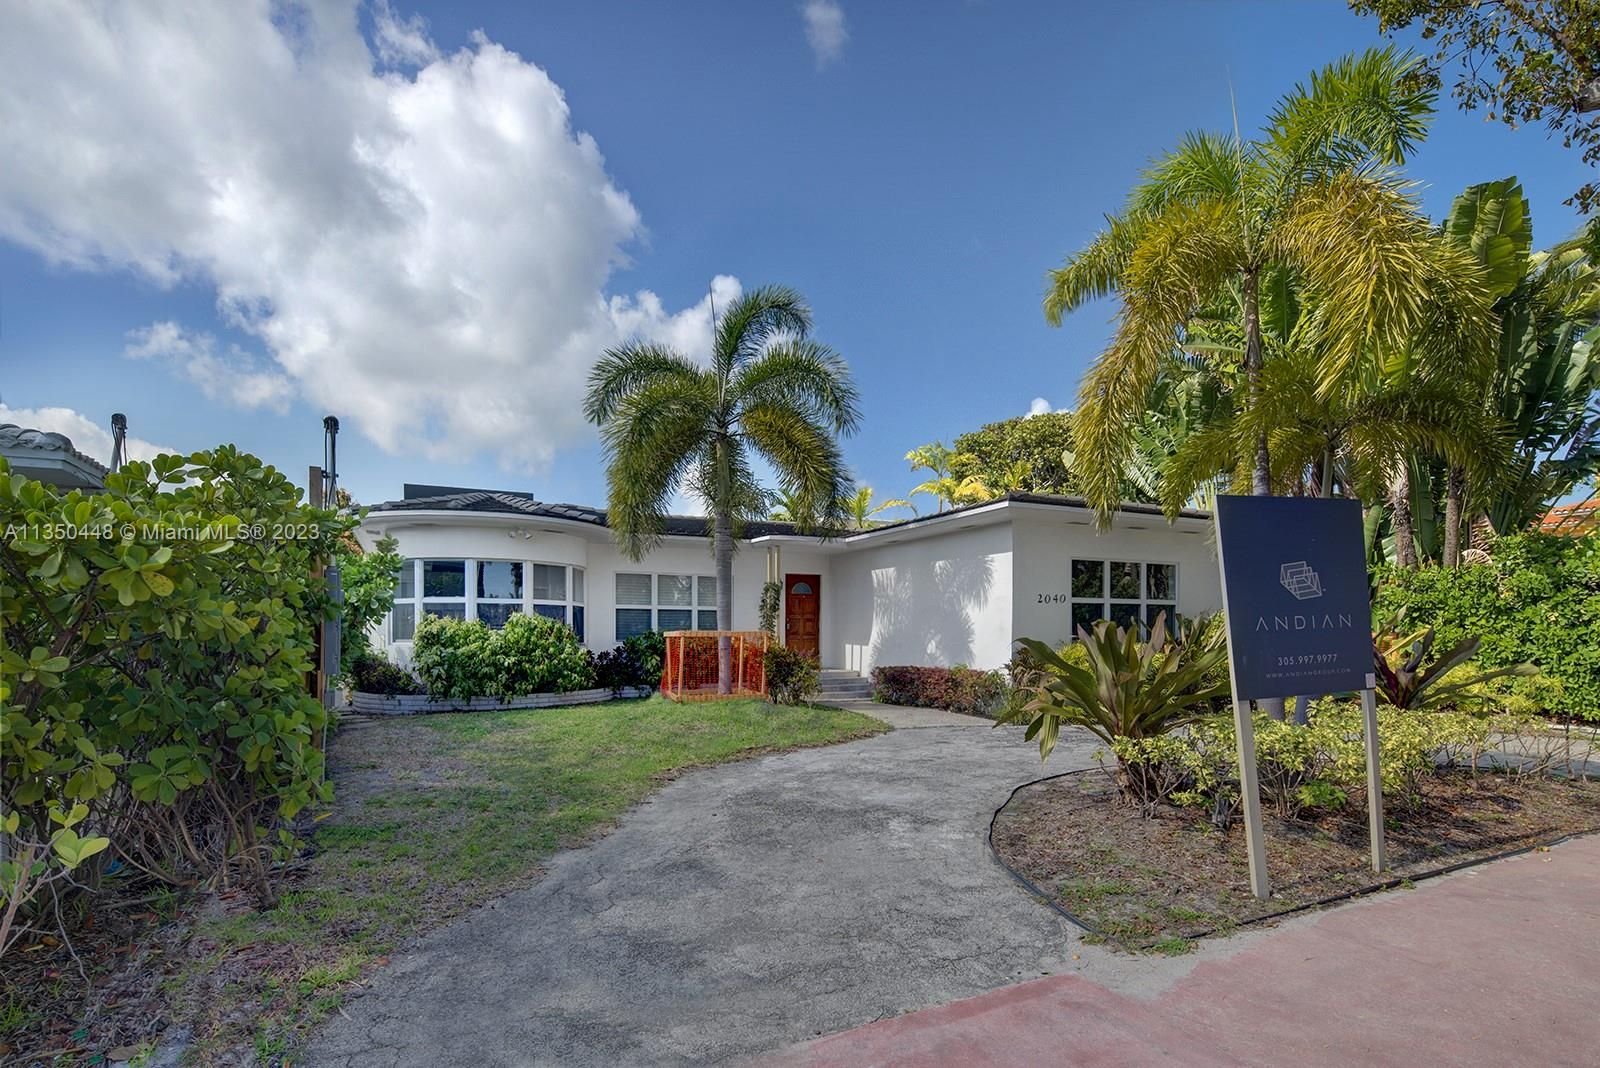 Real estate property located at 2040 Alton Rd, Miami-Dade County, Miami Beach, FL